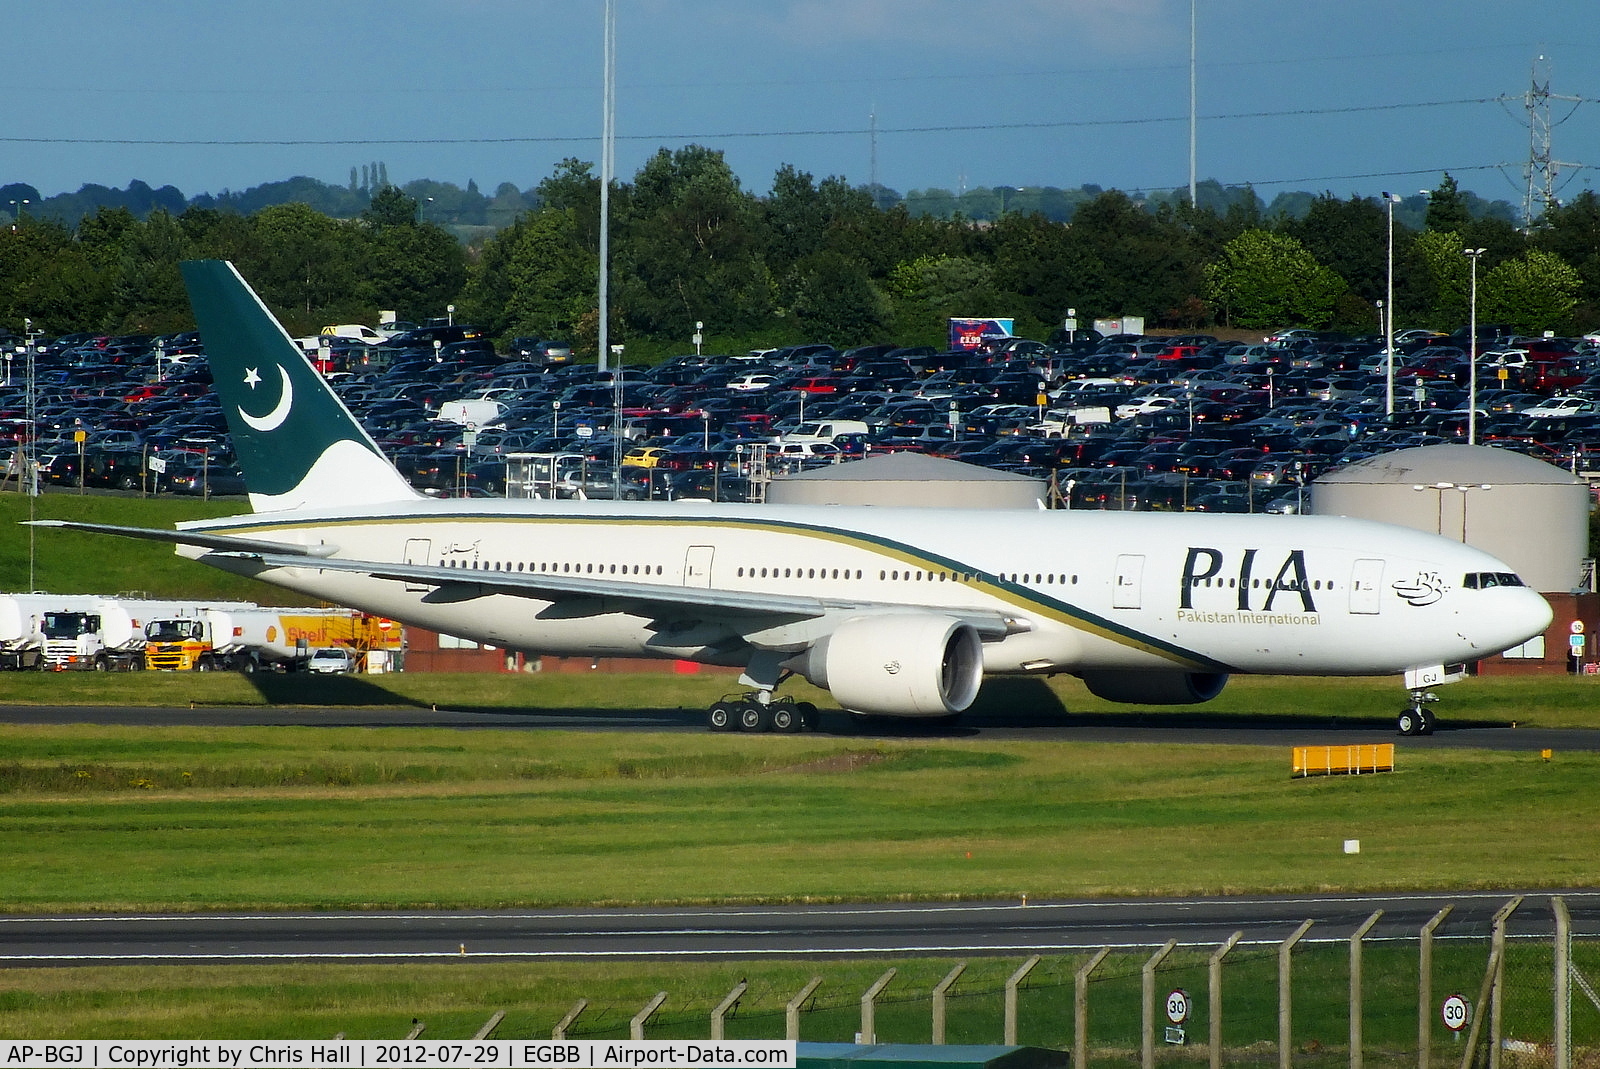 AP-BGJ, 2003 Boeing 777-240/ER C/N 33775, PIA Pakistan International Airlines